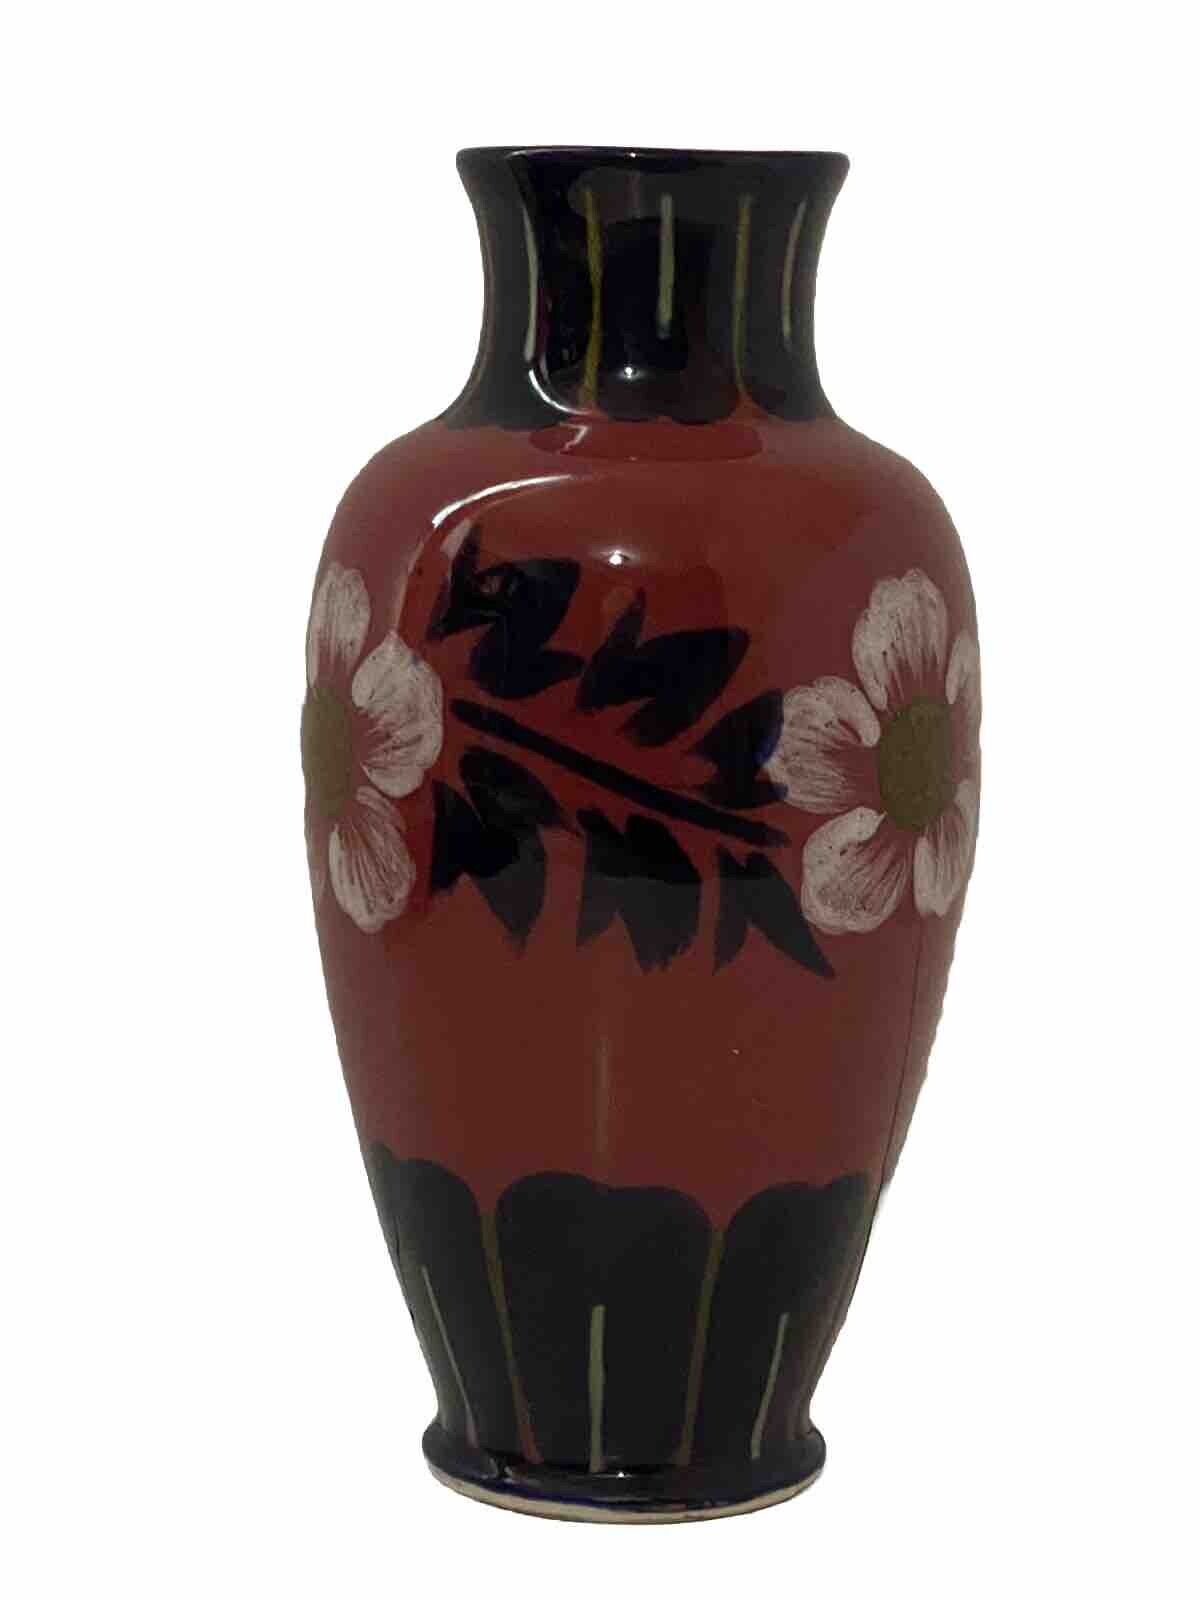 Antique Japanese Awaji Moorcroft Style Art Pottery Vase • Lamp Base 9 5/8”